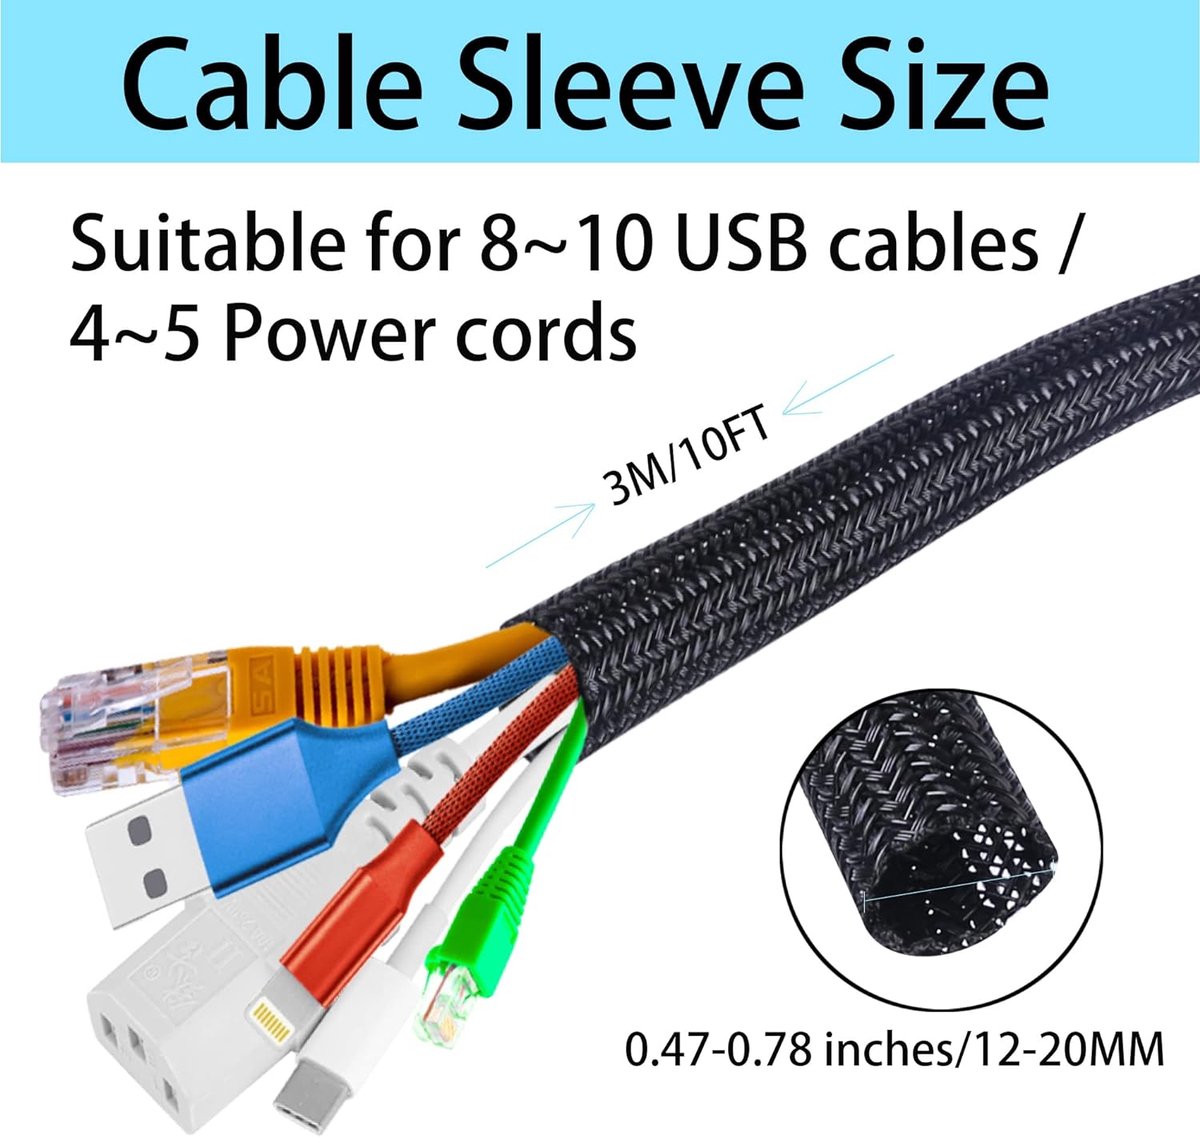 Kabelverzorgde mouw, 3m kabelbeheerbuis voor pc/tv, diameter 12-20mm, zelfklevende beschermer draadnette organizer voor thuis, kantoor - zwart